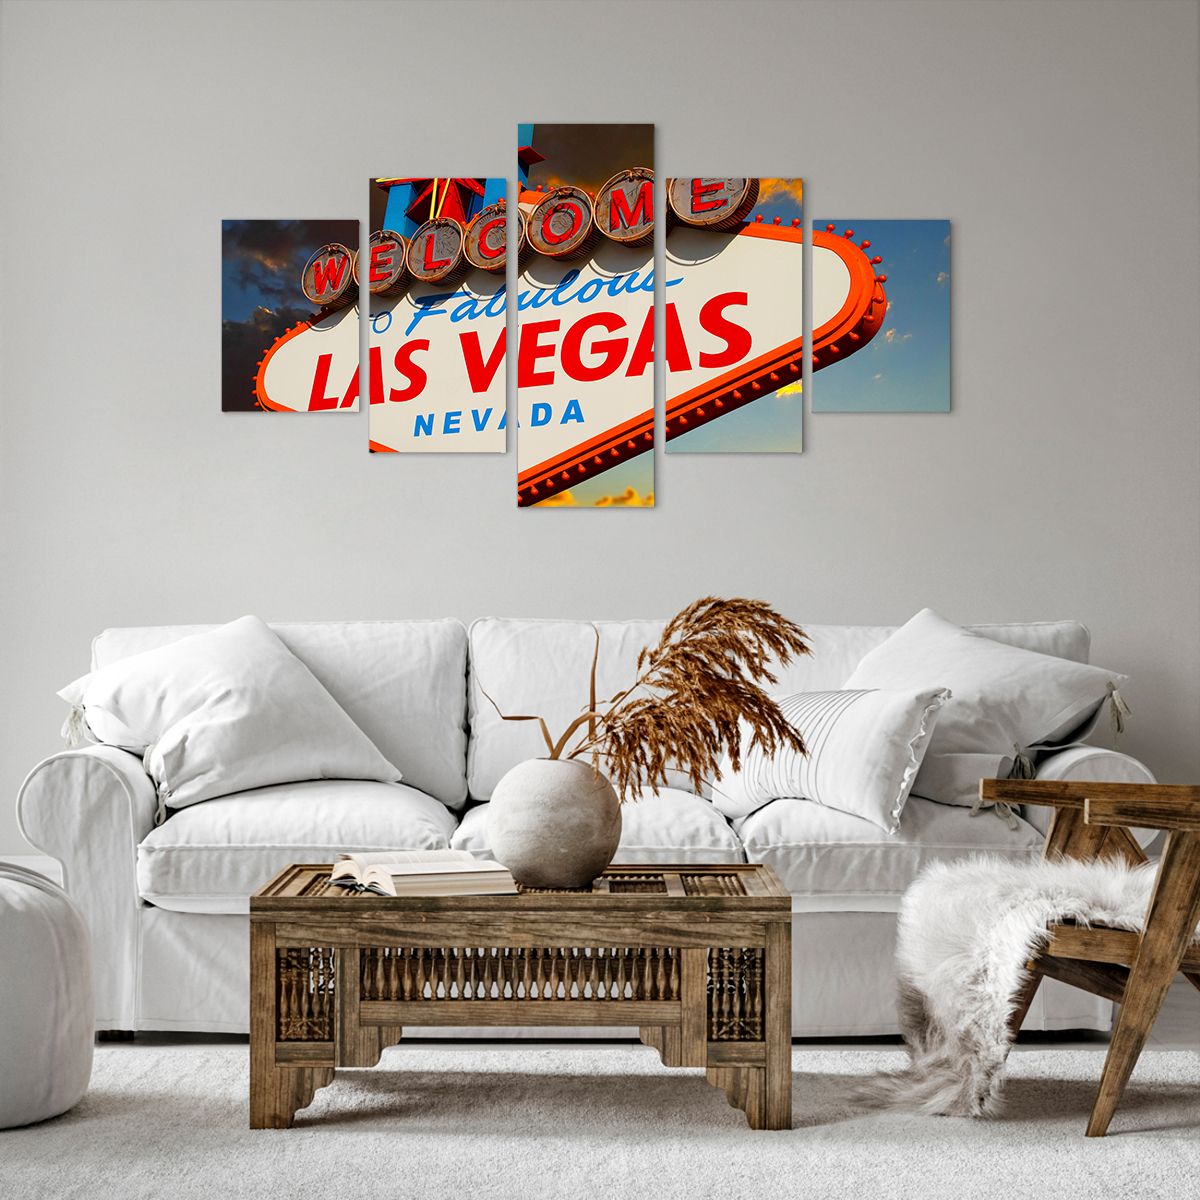 Bild auf Leinwand Reisen, Bild auf Leinwand Las Vegas, Bild auf Leinwand Stadt, Bild auf Leinwand Usa, Bild auf Leinwand Nevada